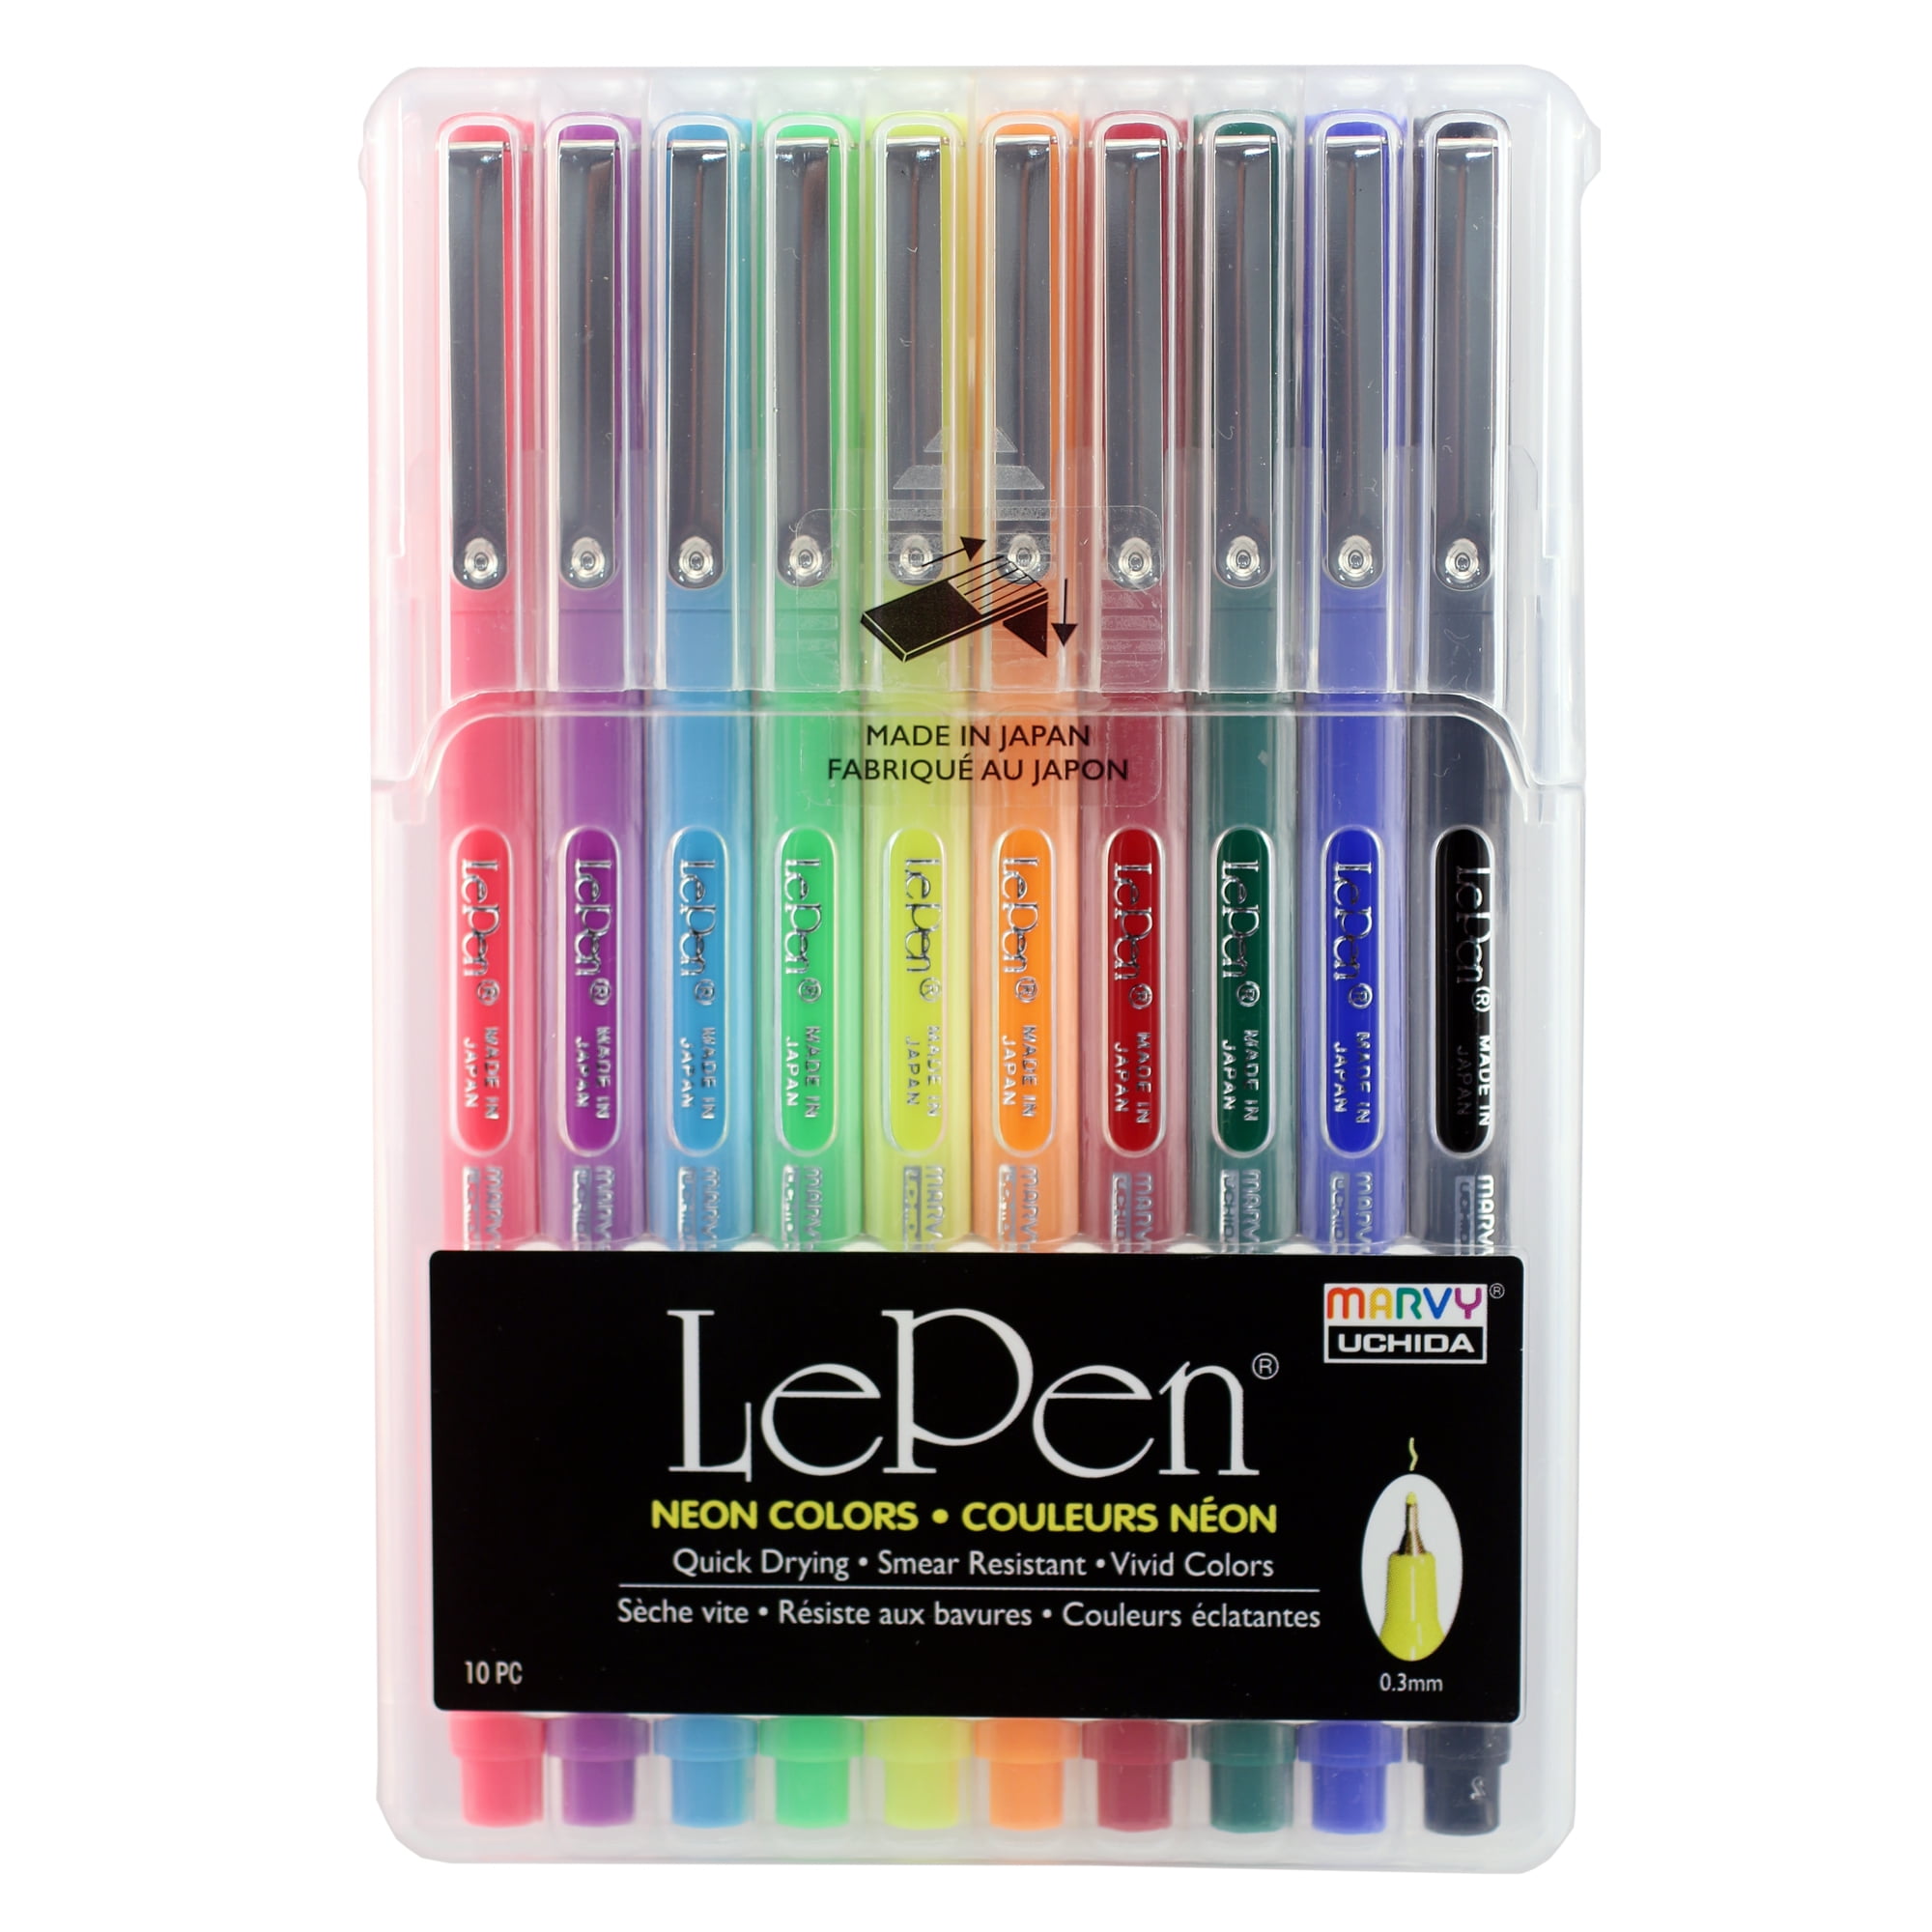 Le Pens Multicolor Set, 0.3mm Fine Point Pens, Smudge Proof Ink